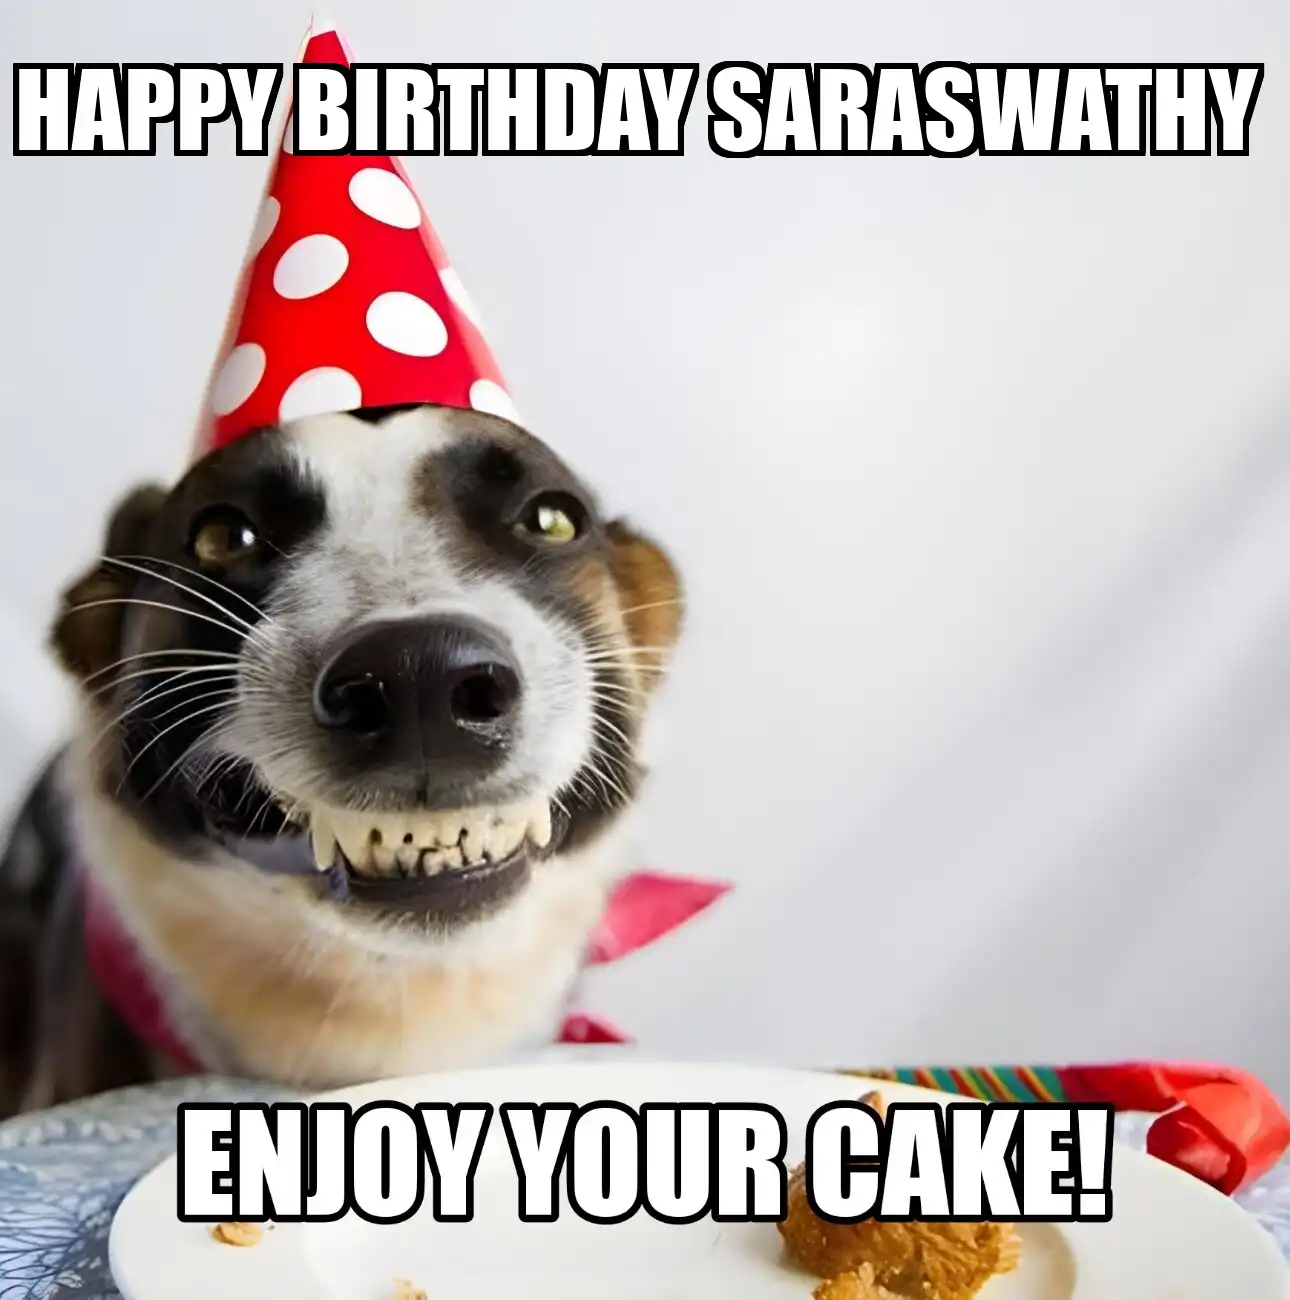 Happy Birthday Saraswathy Enjoy Your Cake Dog Meme